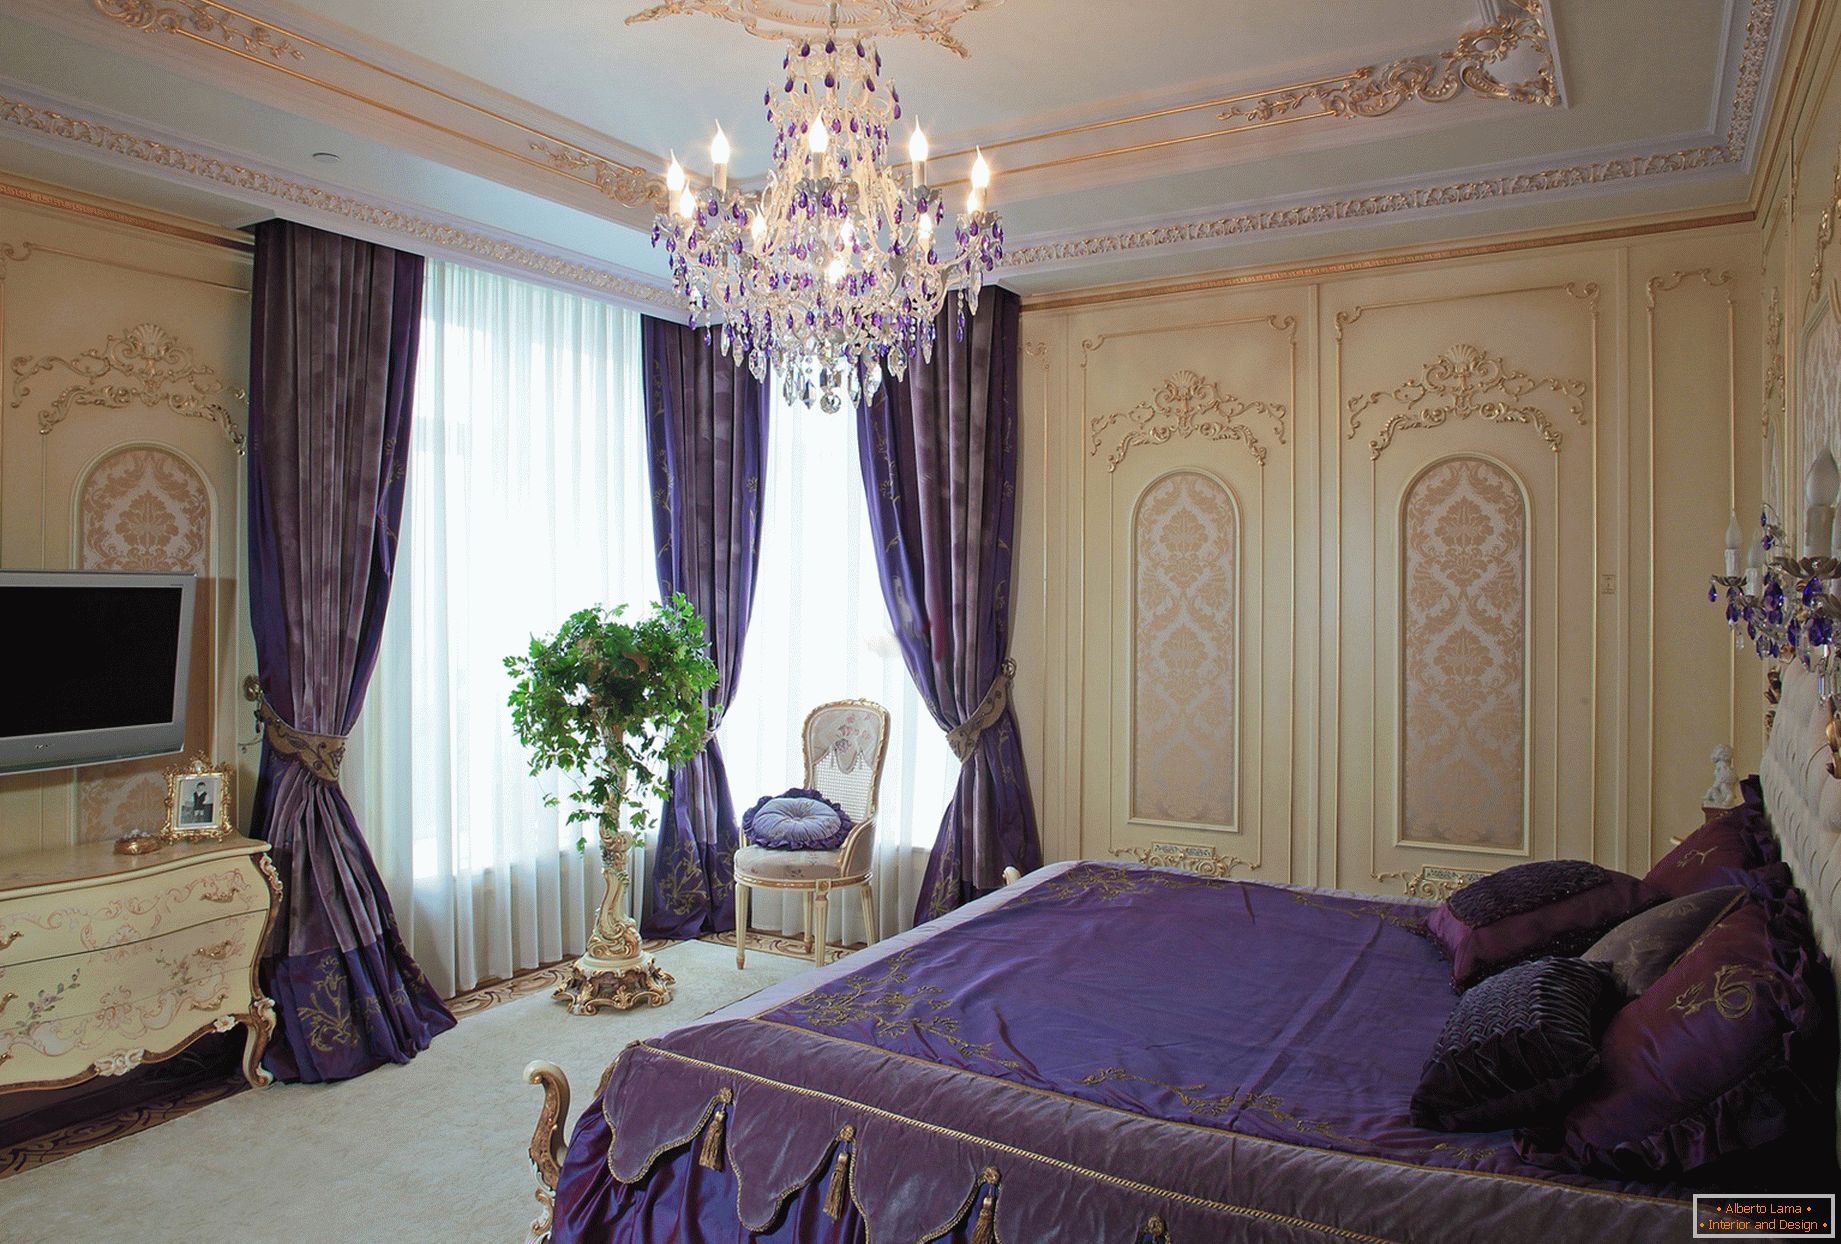 Stylová ložnice v barokním stylu. Jemný designový koncept - tmavě purpurové závěsy jsou kombinovány s lůžkovinami odpovídající tónu.